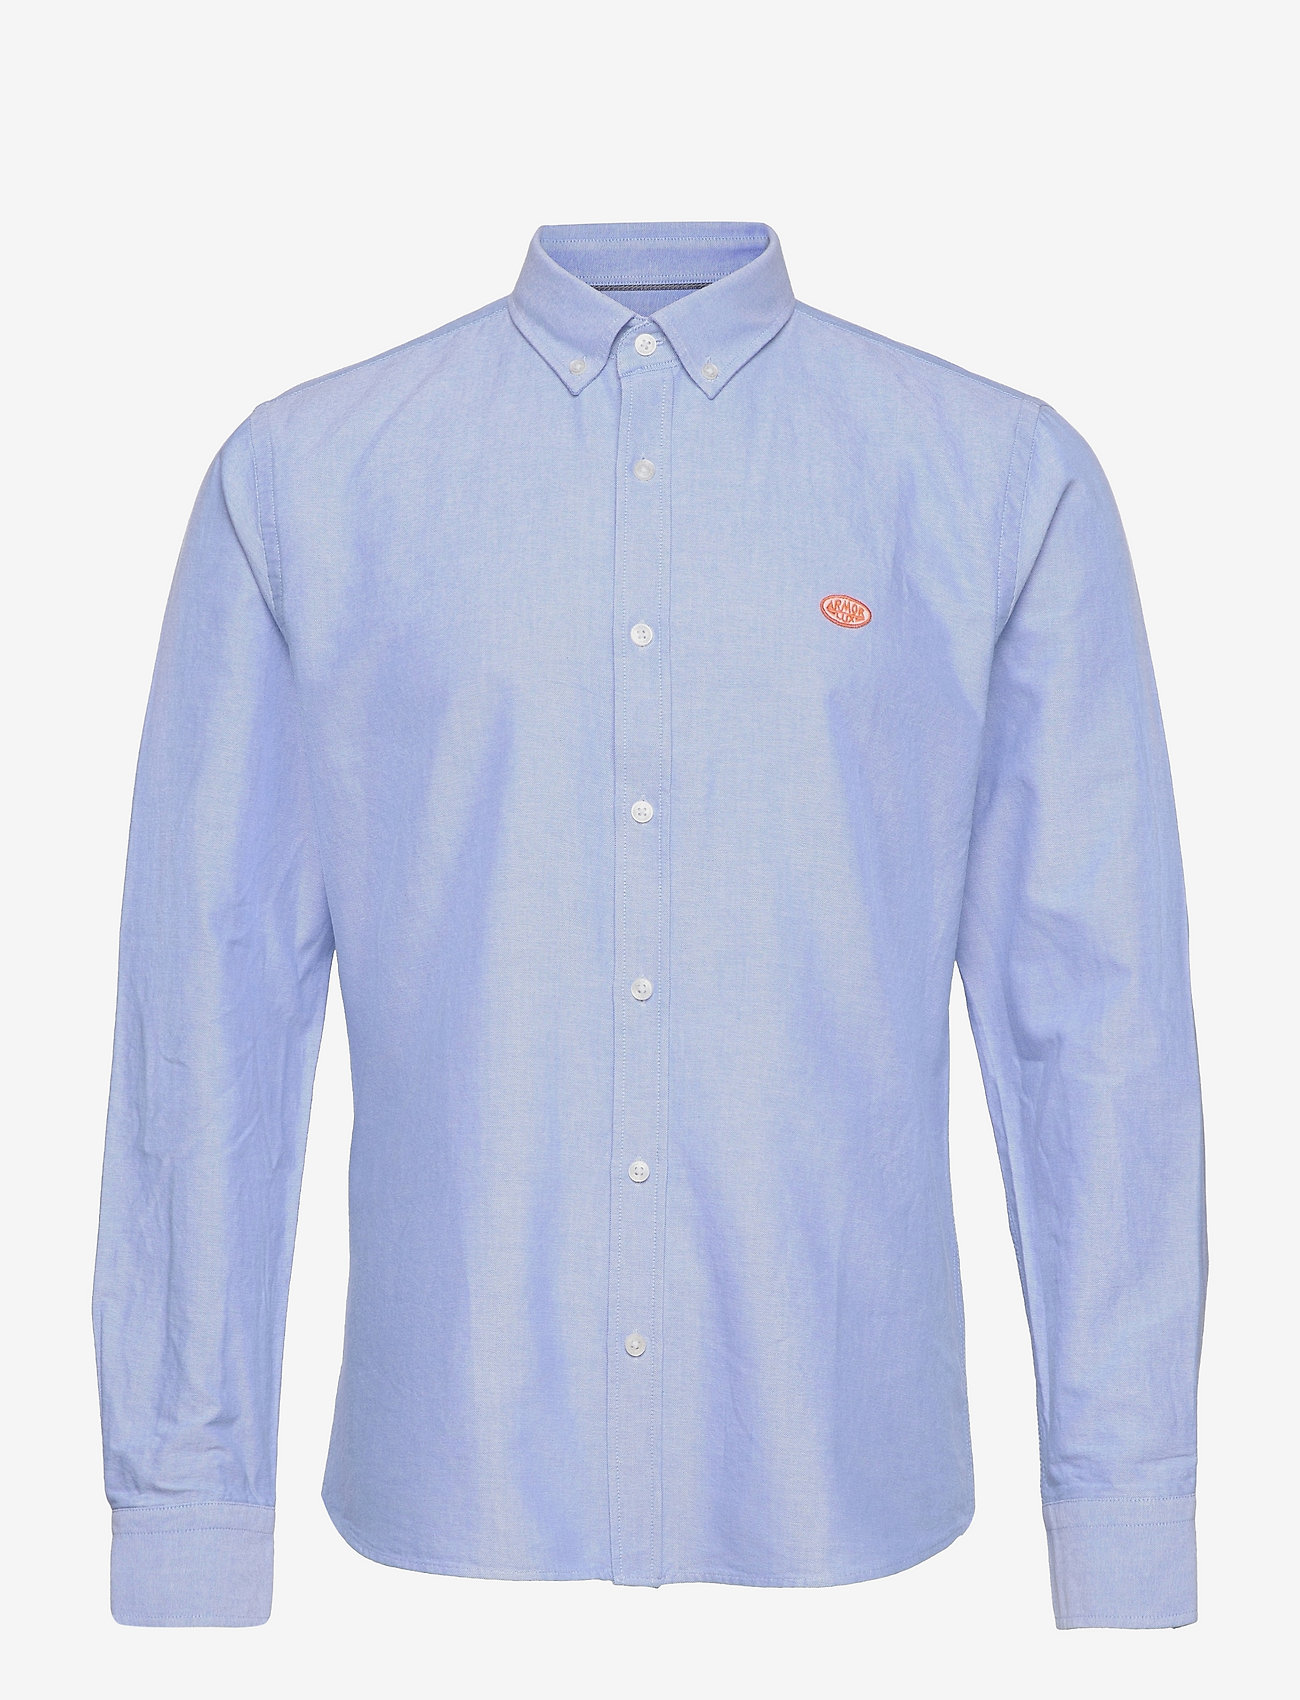 Armor Lux - Oxford shirt - oxford-hemden - light blue - 0